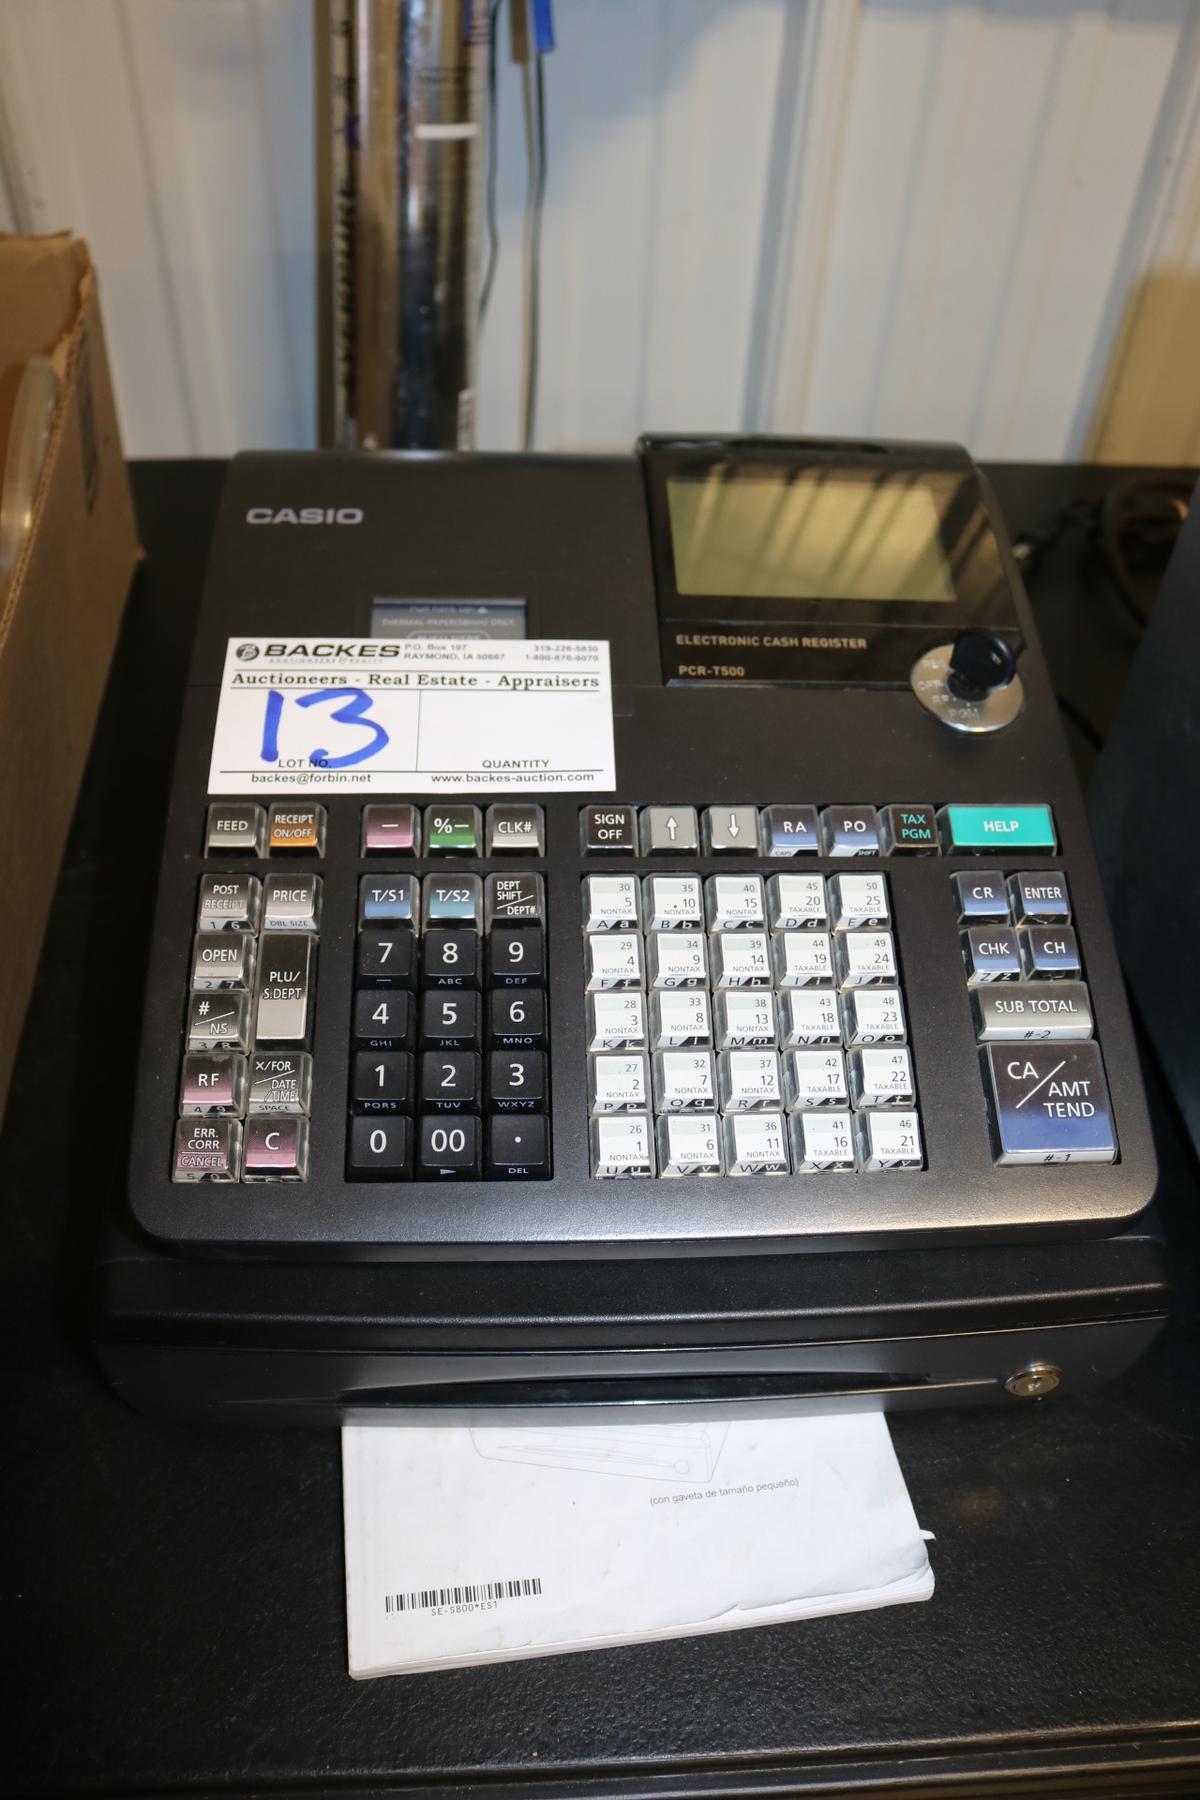 Royal PCR-T500 cash register